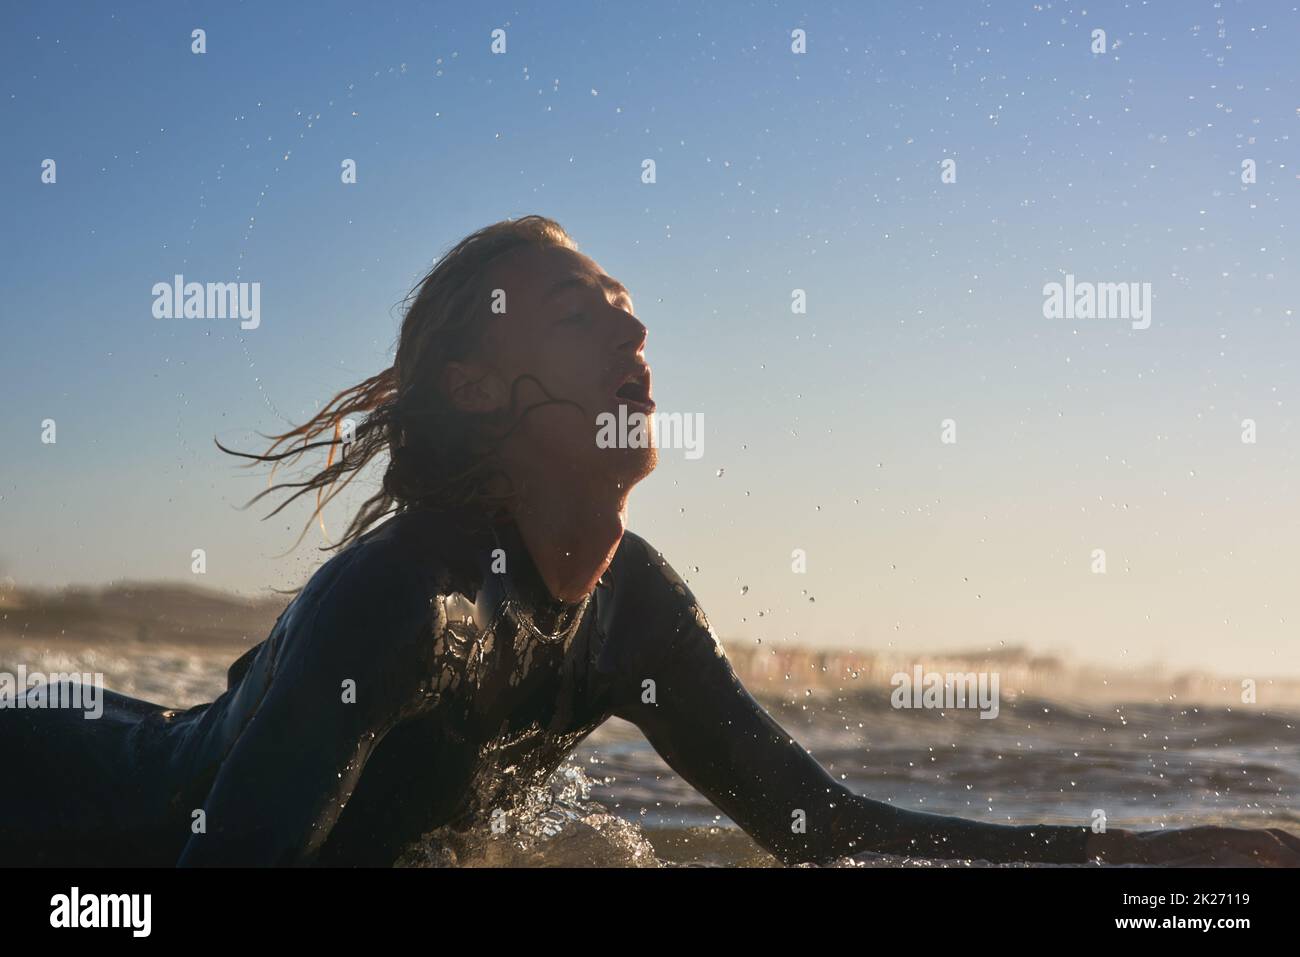 Er ist in der Welle gefangen. Aufnahme eines hübschen jungen Mannes, der im Meer surft. Stockfoto